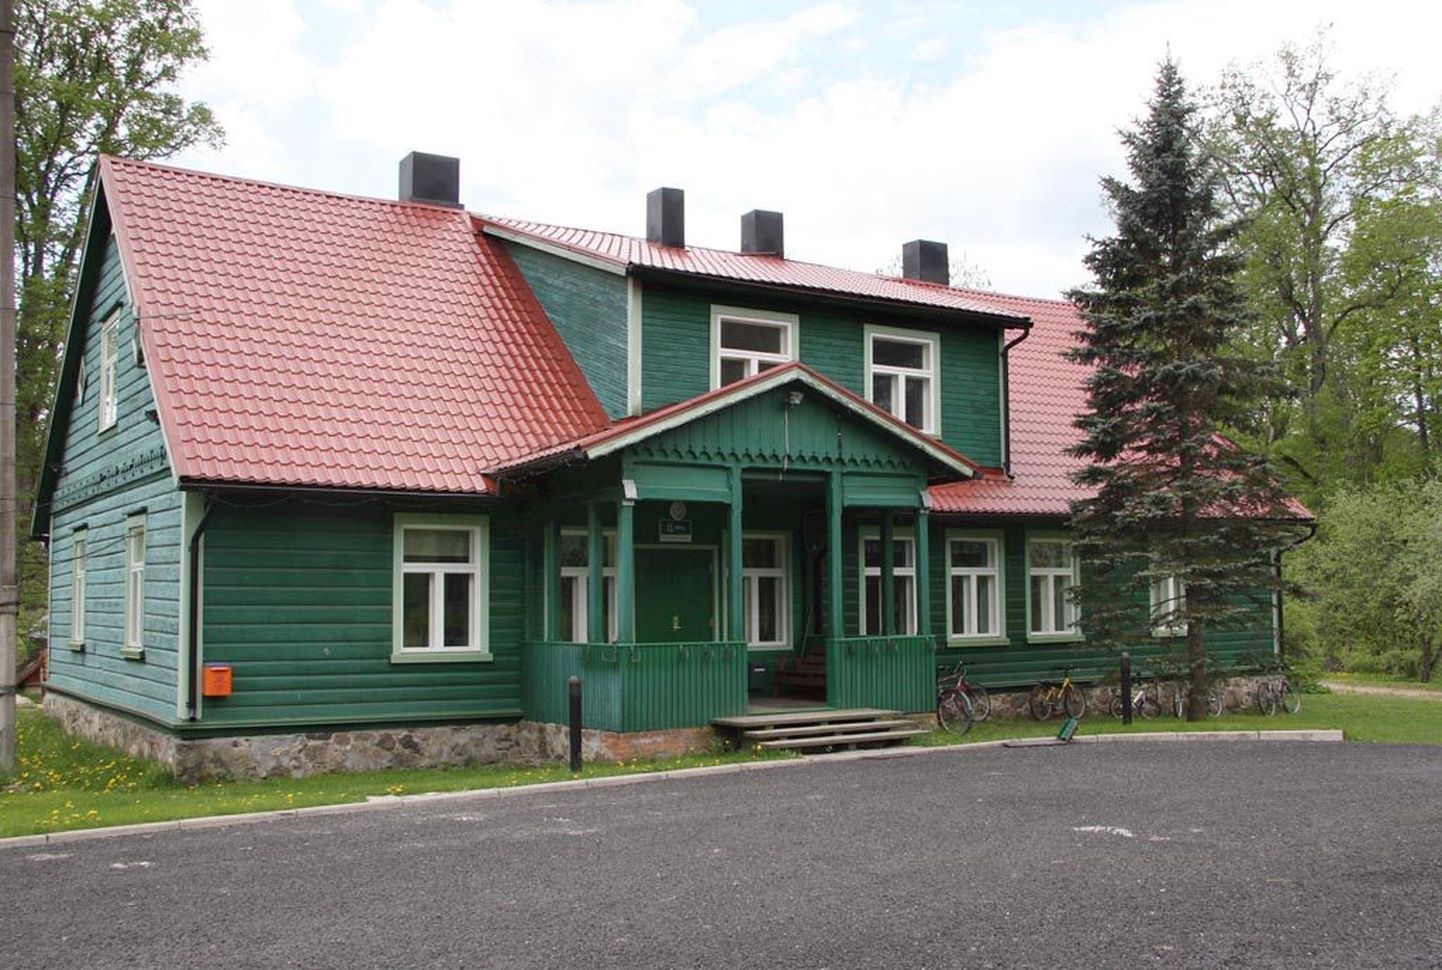 Laiksaare metskonna maja ehitati 1910. aastal, selles asub RMK Pärnumaa metskonna kontor.